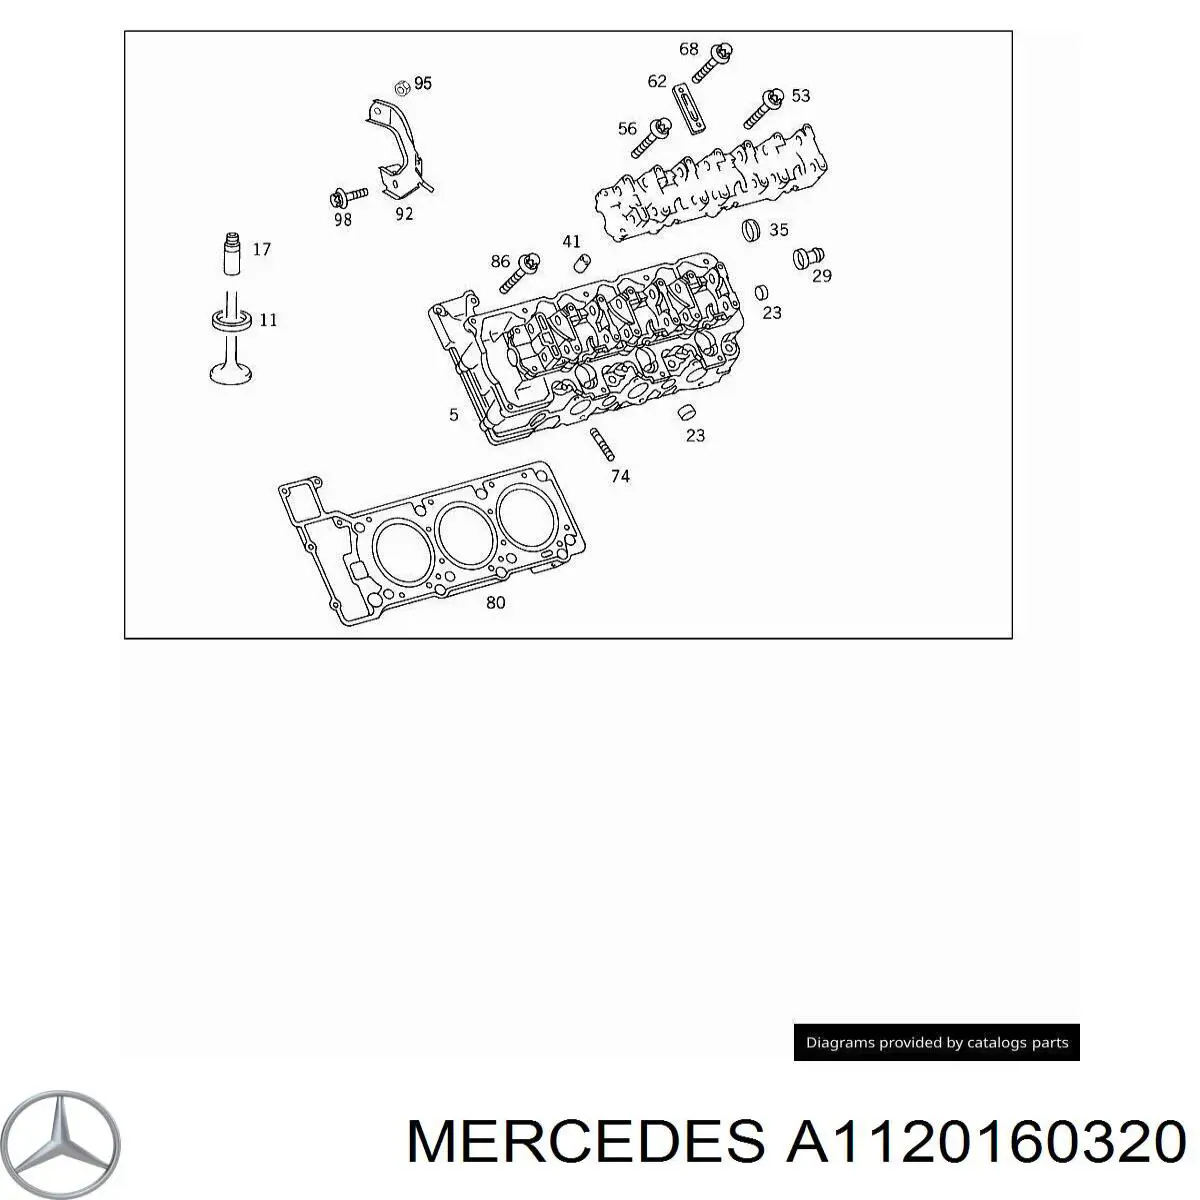 A1120160320 Mercedes прокладка головки блока цилиндров (гбц левая)